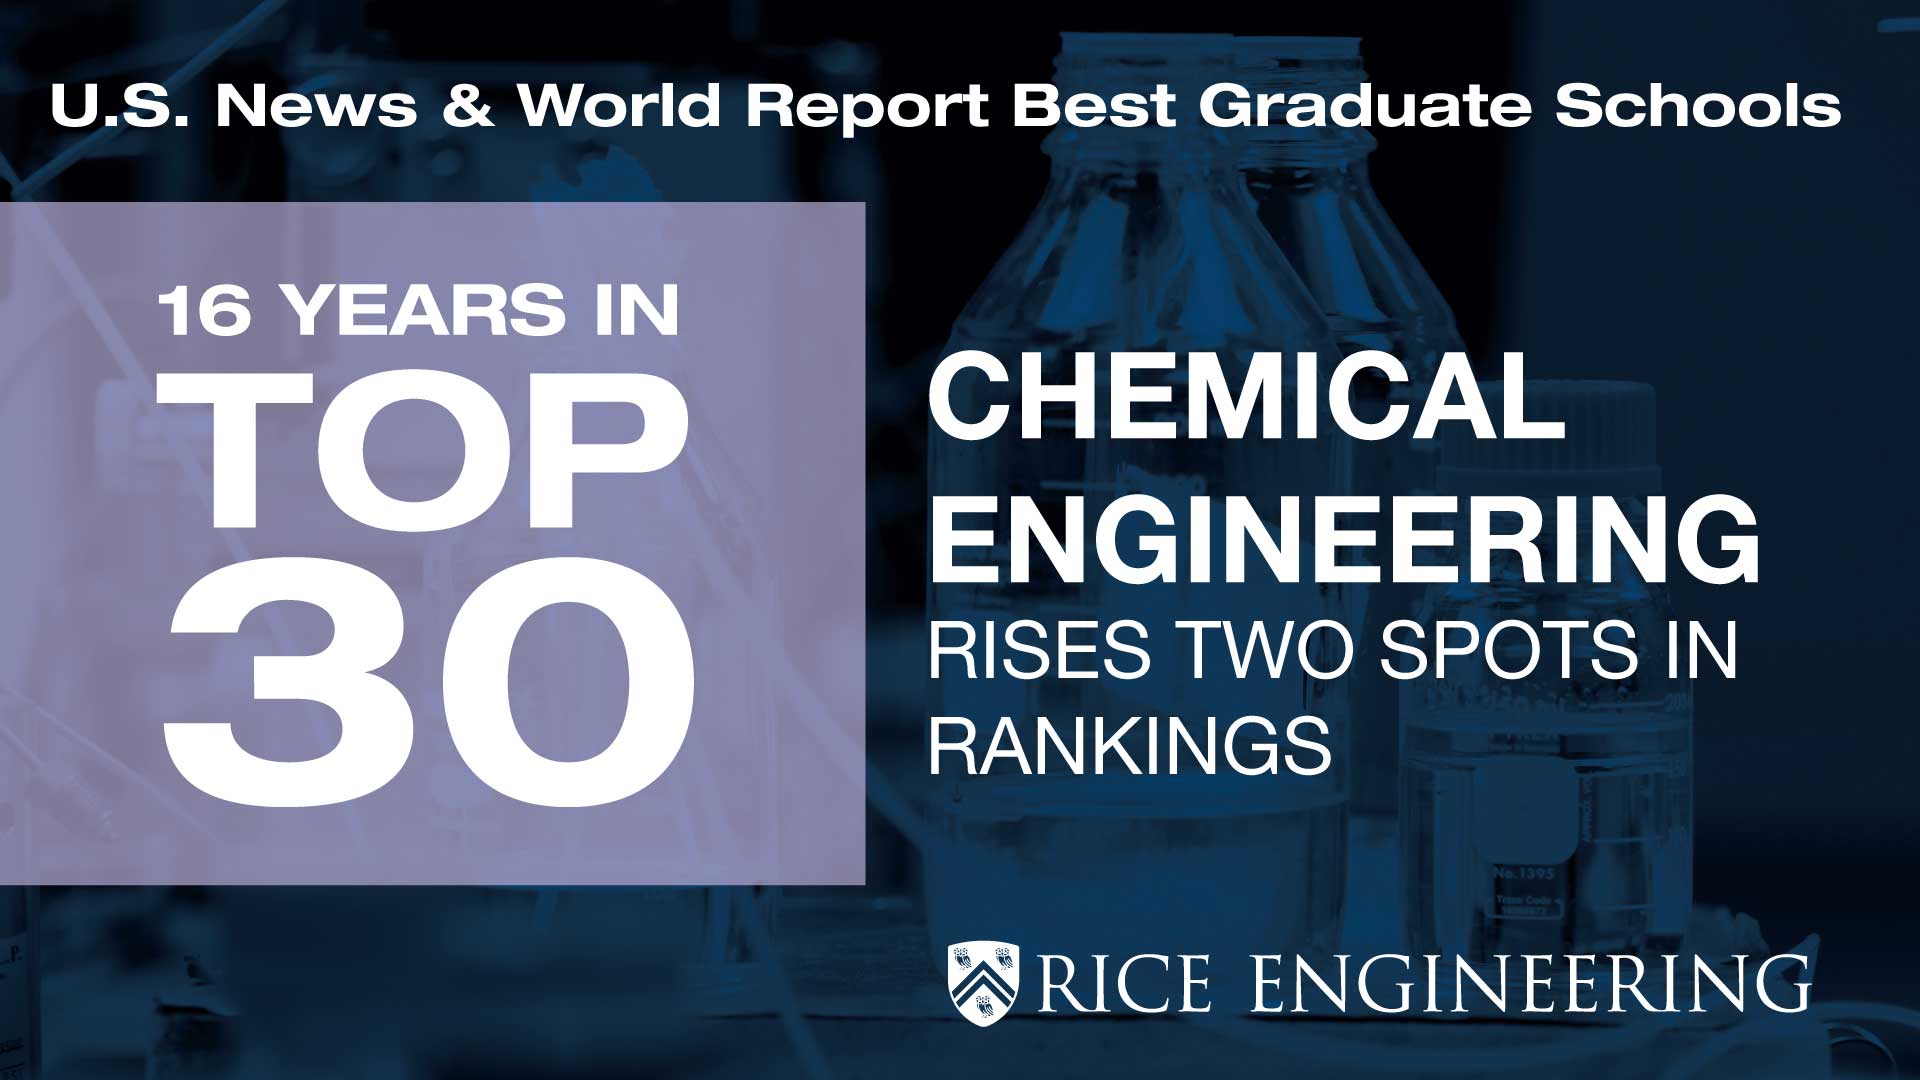 16 years in top 30 graduate chemical engineering programs